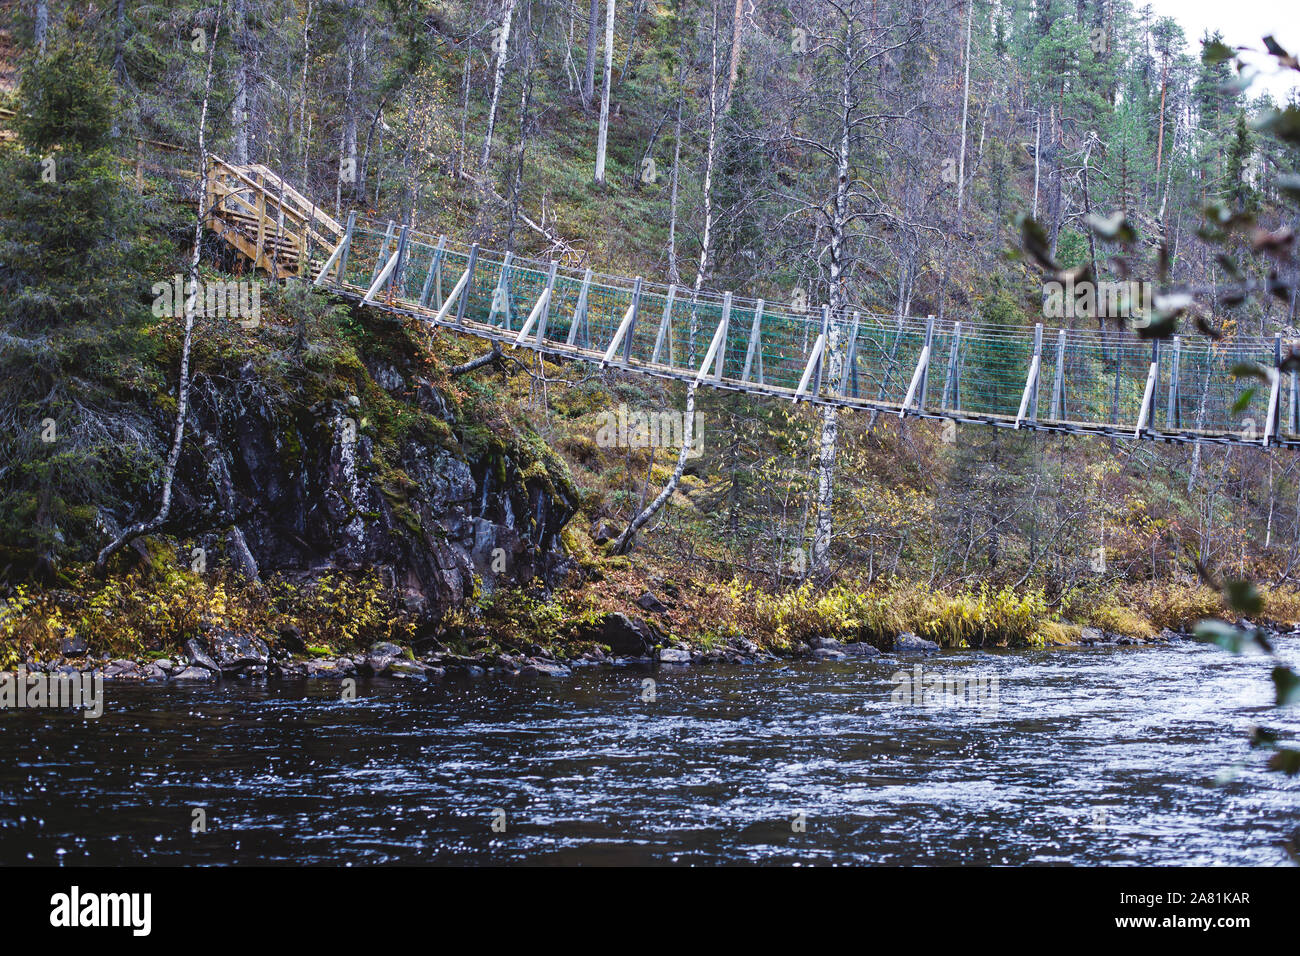 Compte tenu de l'automne paysage du Parc National d'Oulanka, au cours de la randonnée, un parc national de Finlande dans l'Ostrobotnie du Nord et en Laponie Finlande Banque D'Images